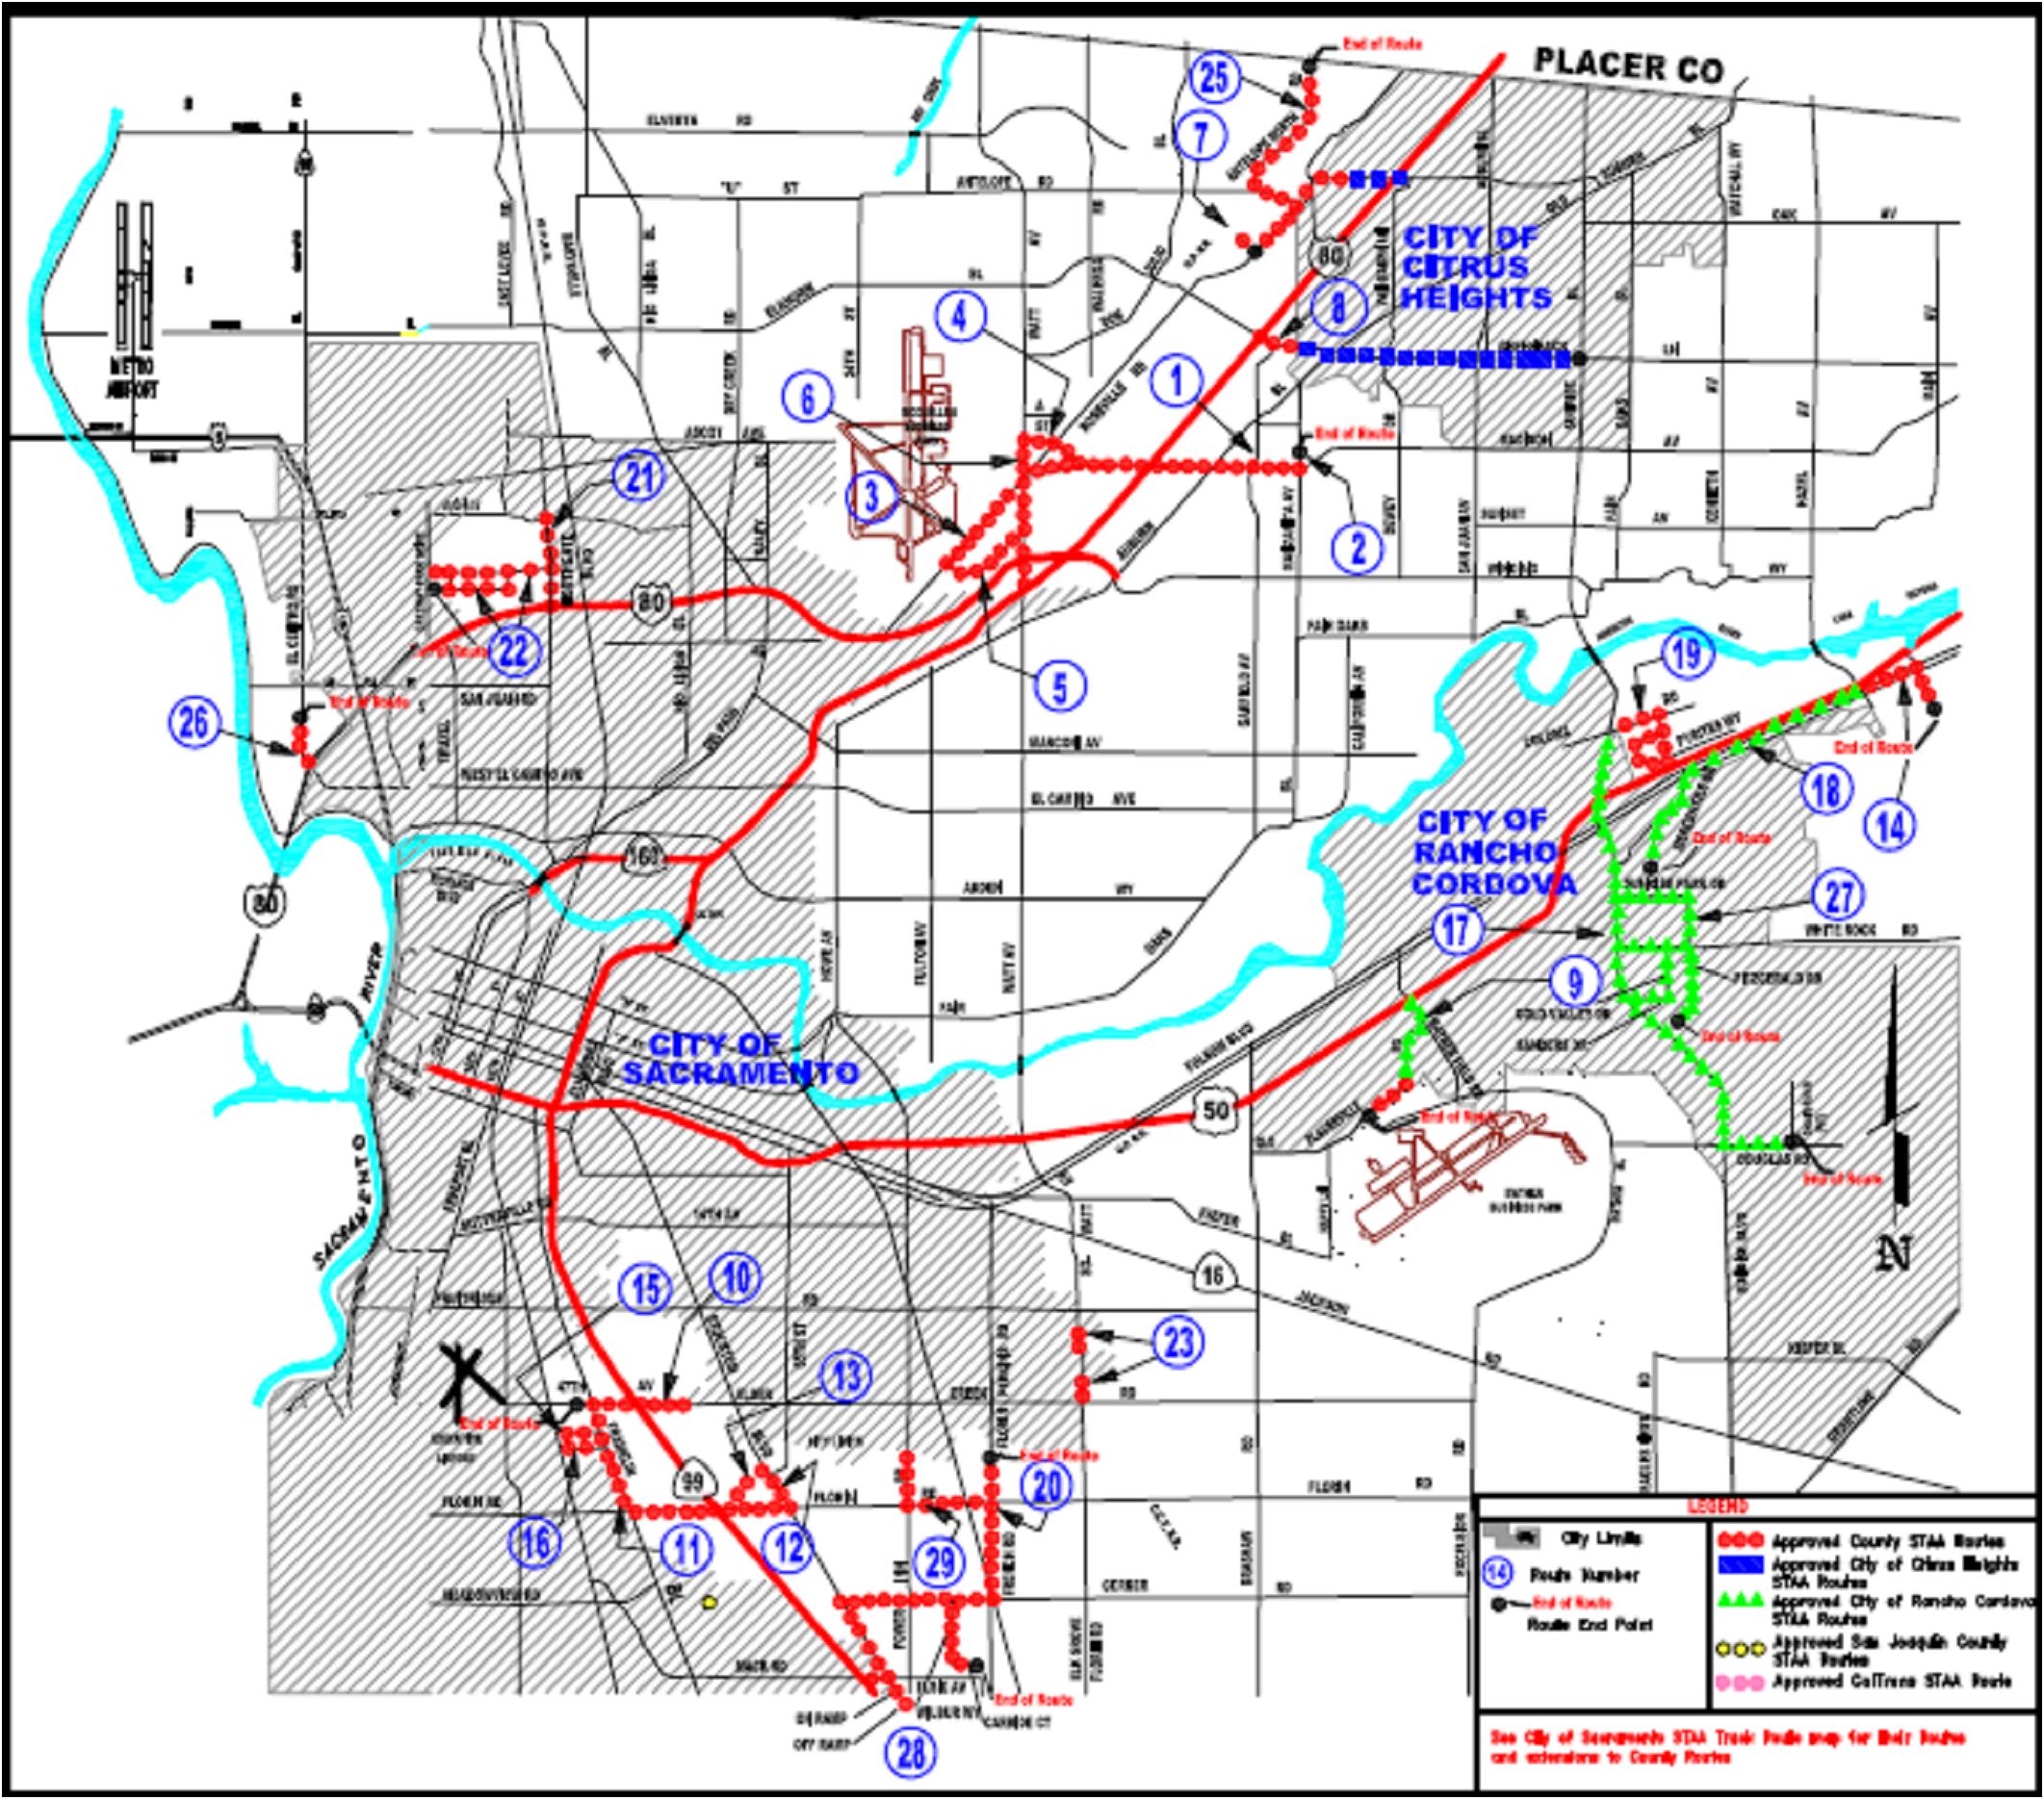 Image of Sacramento Roadways. Click to enlarge image